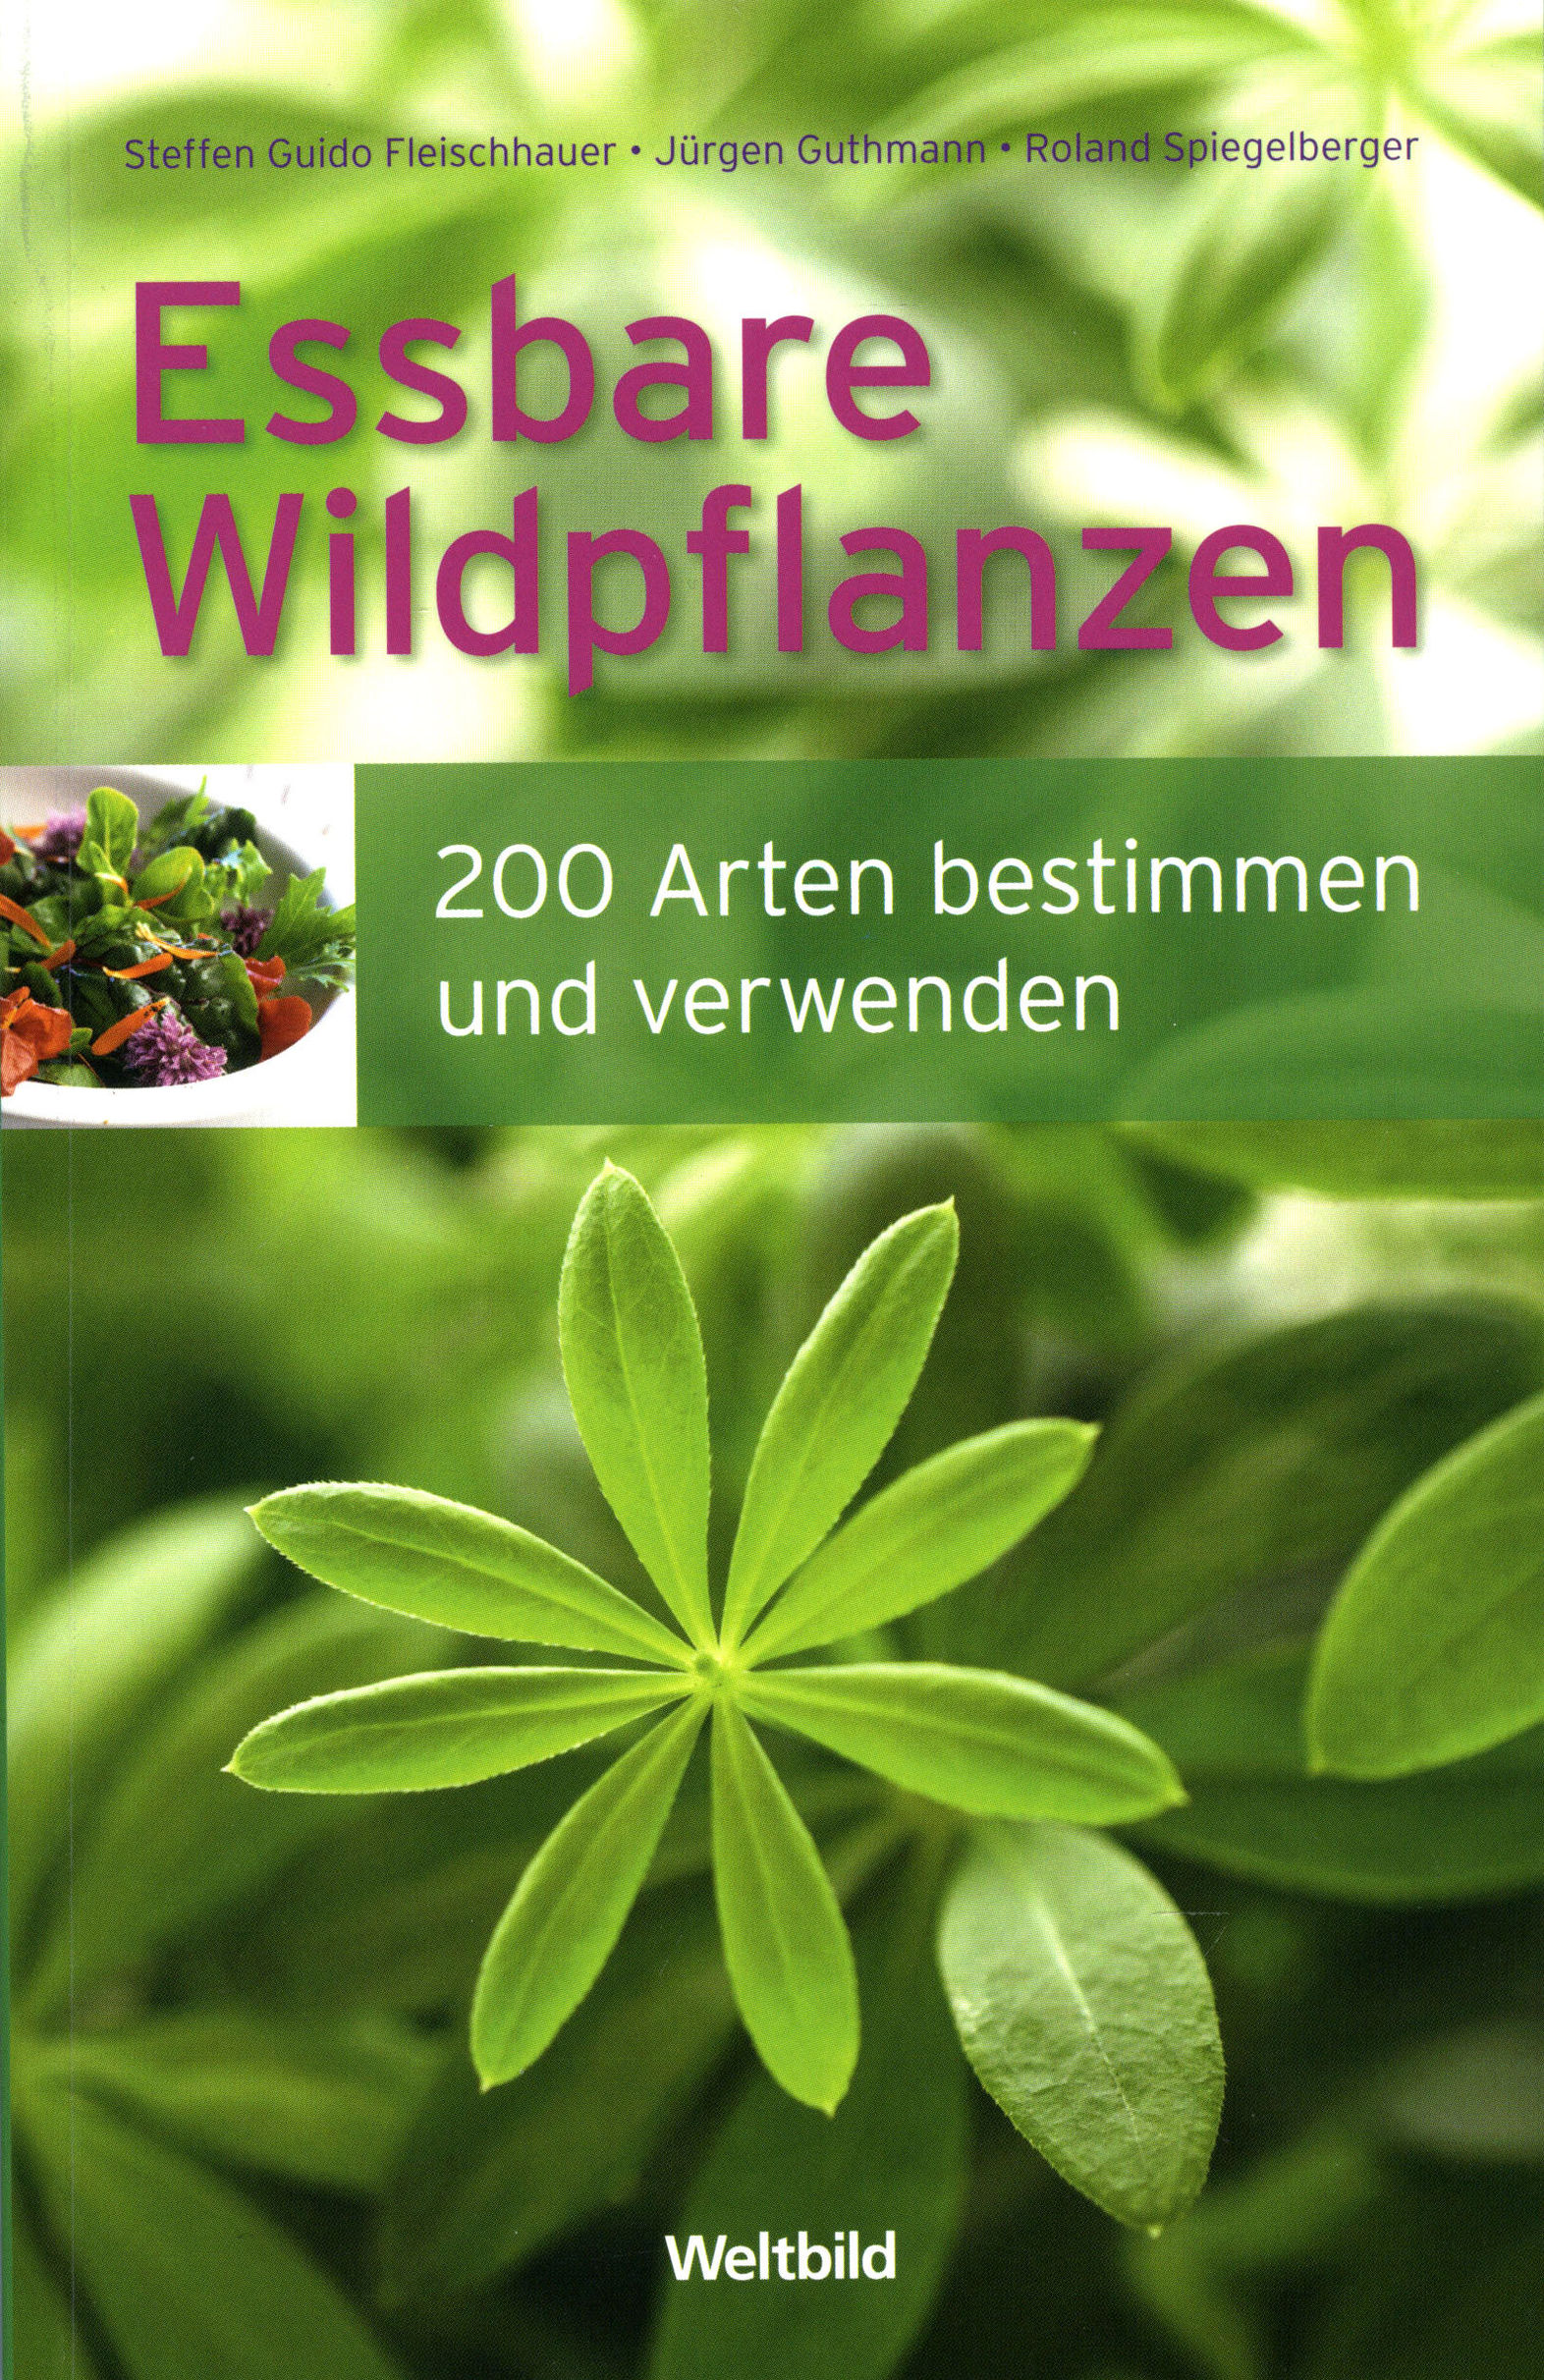 Essbare Wildpflanzen Buch jetzt als Weltbild-Ausgabe versandkostenfrei